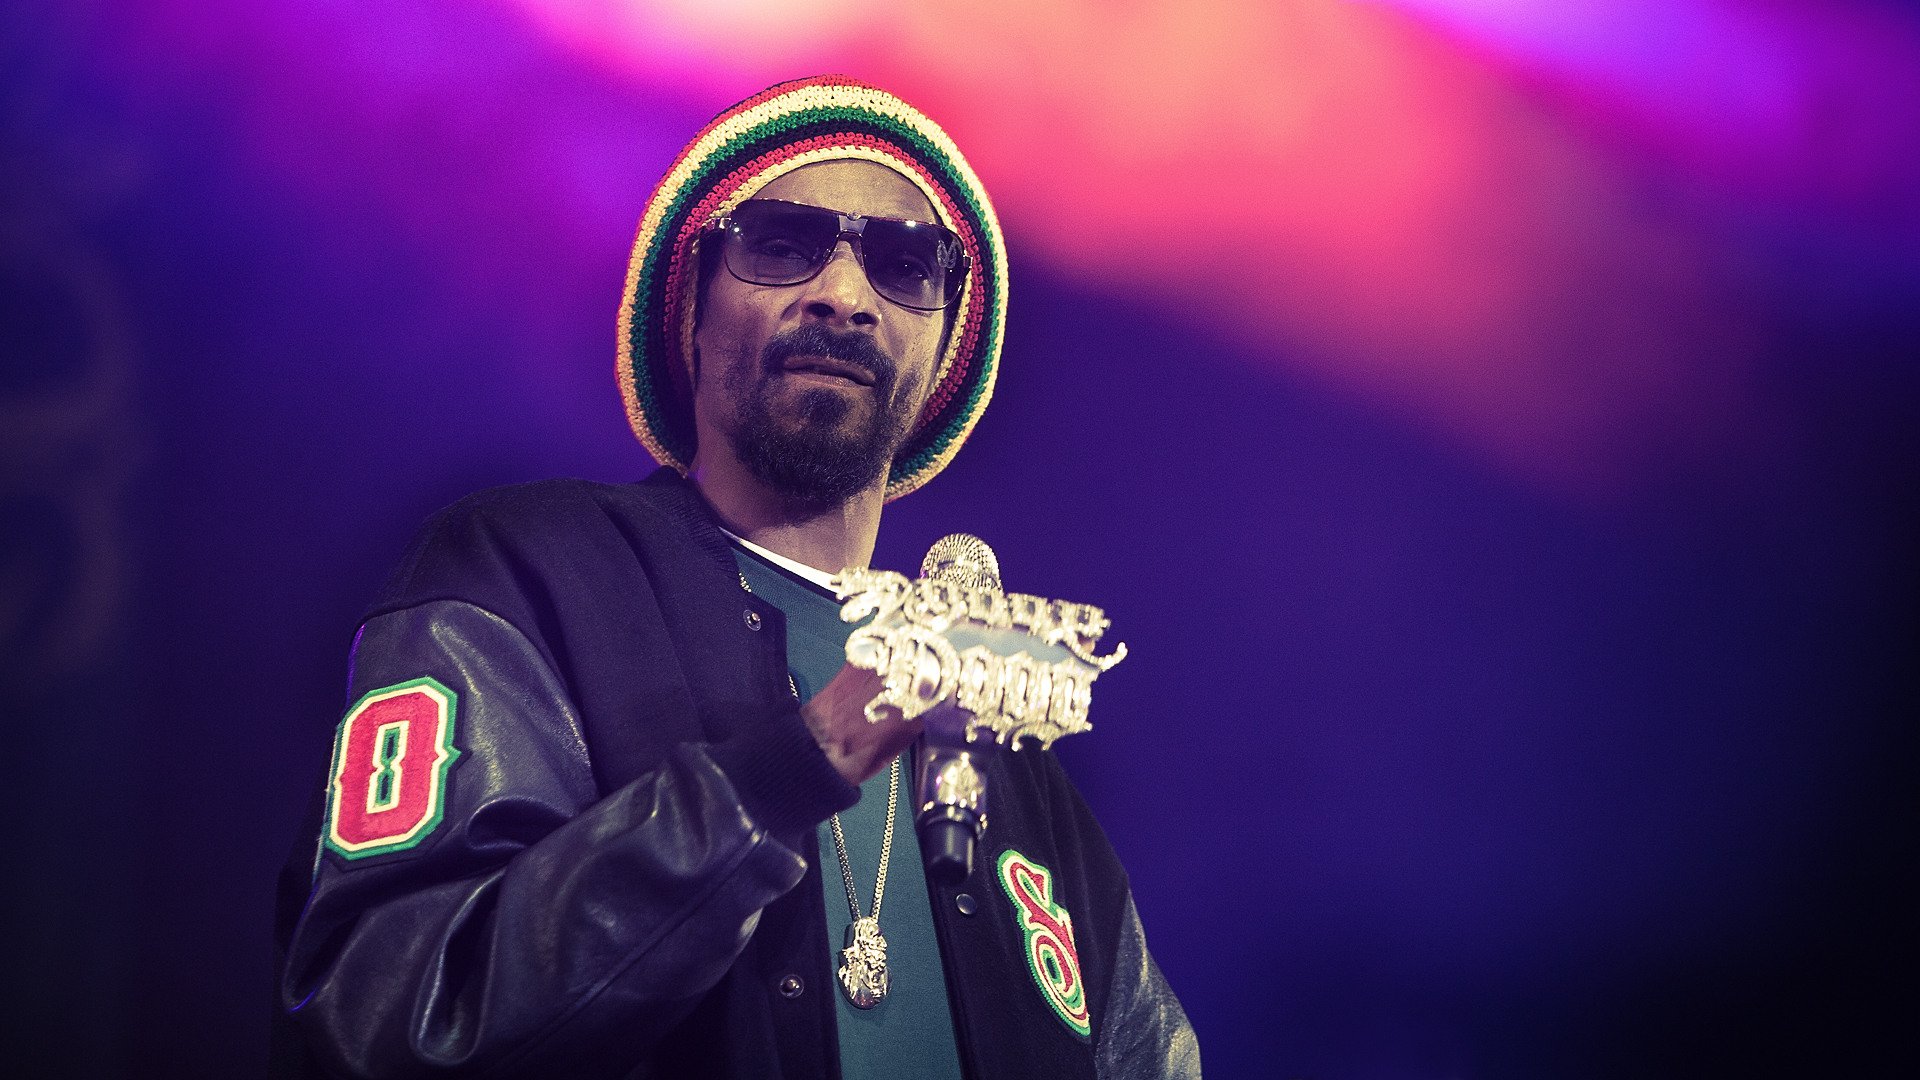 Música Snoop Dogg HD Fondo De Pantalla